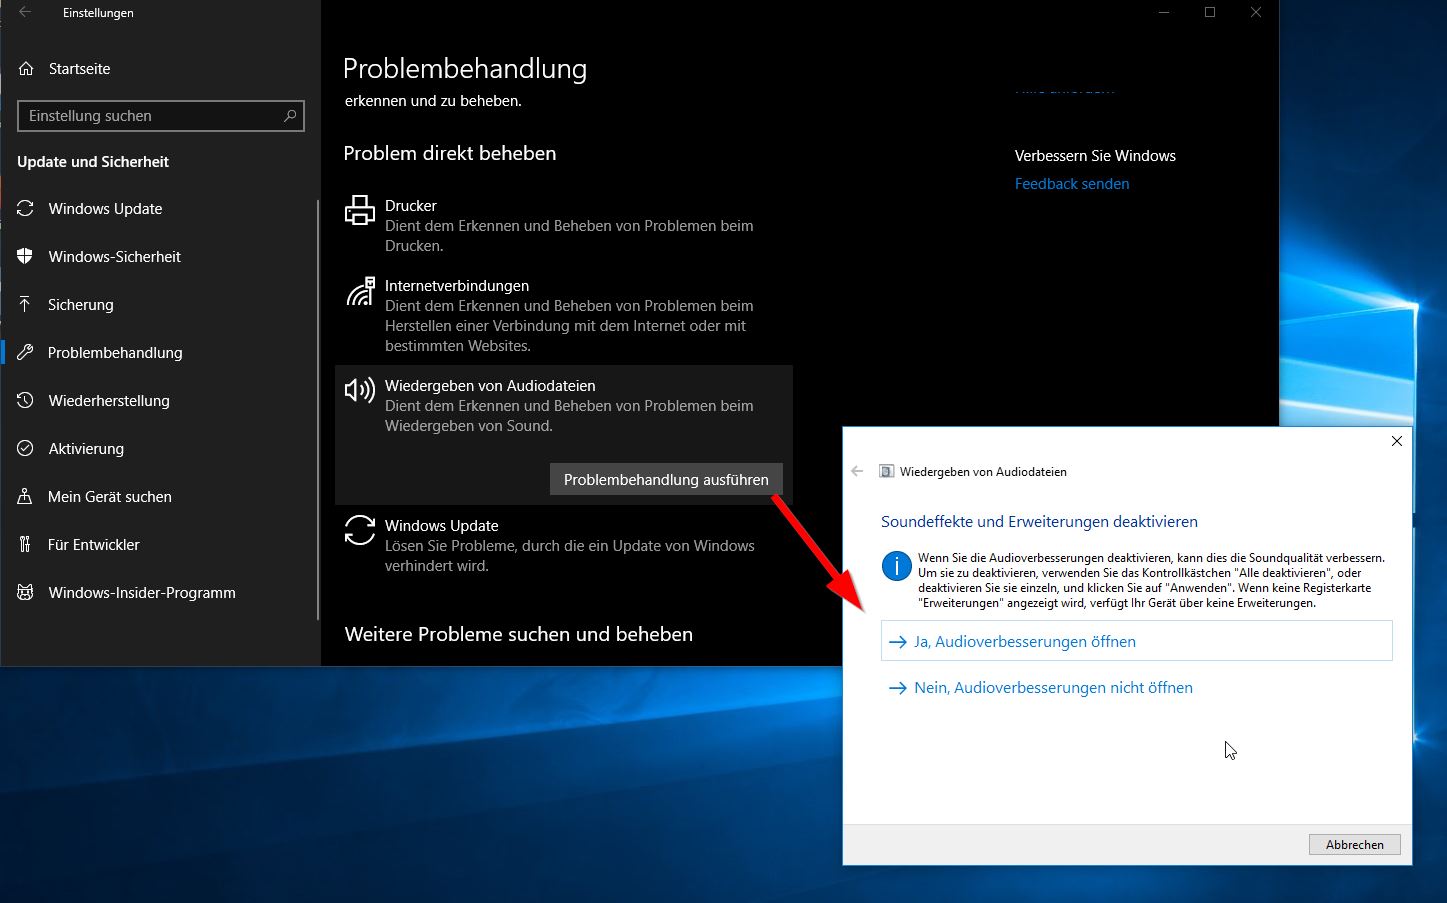 Behebung des Fehlers beim Lokalen Sitzungsmanageranmeldedienst
Alternative Anmeldemethoden für Windows 10